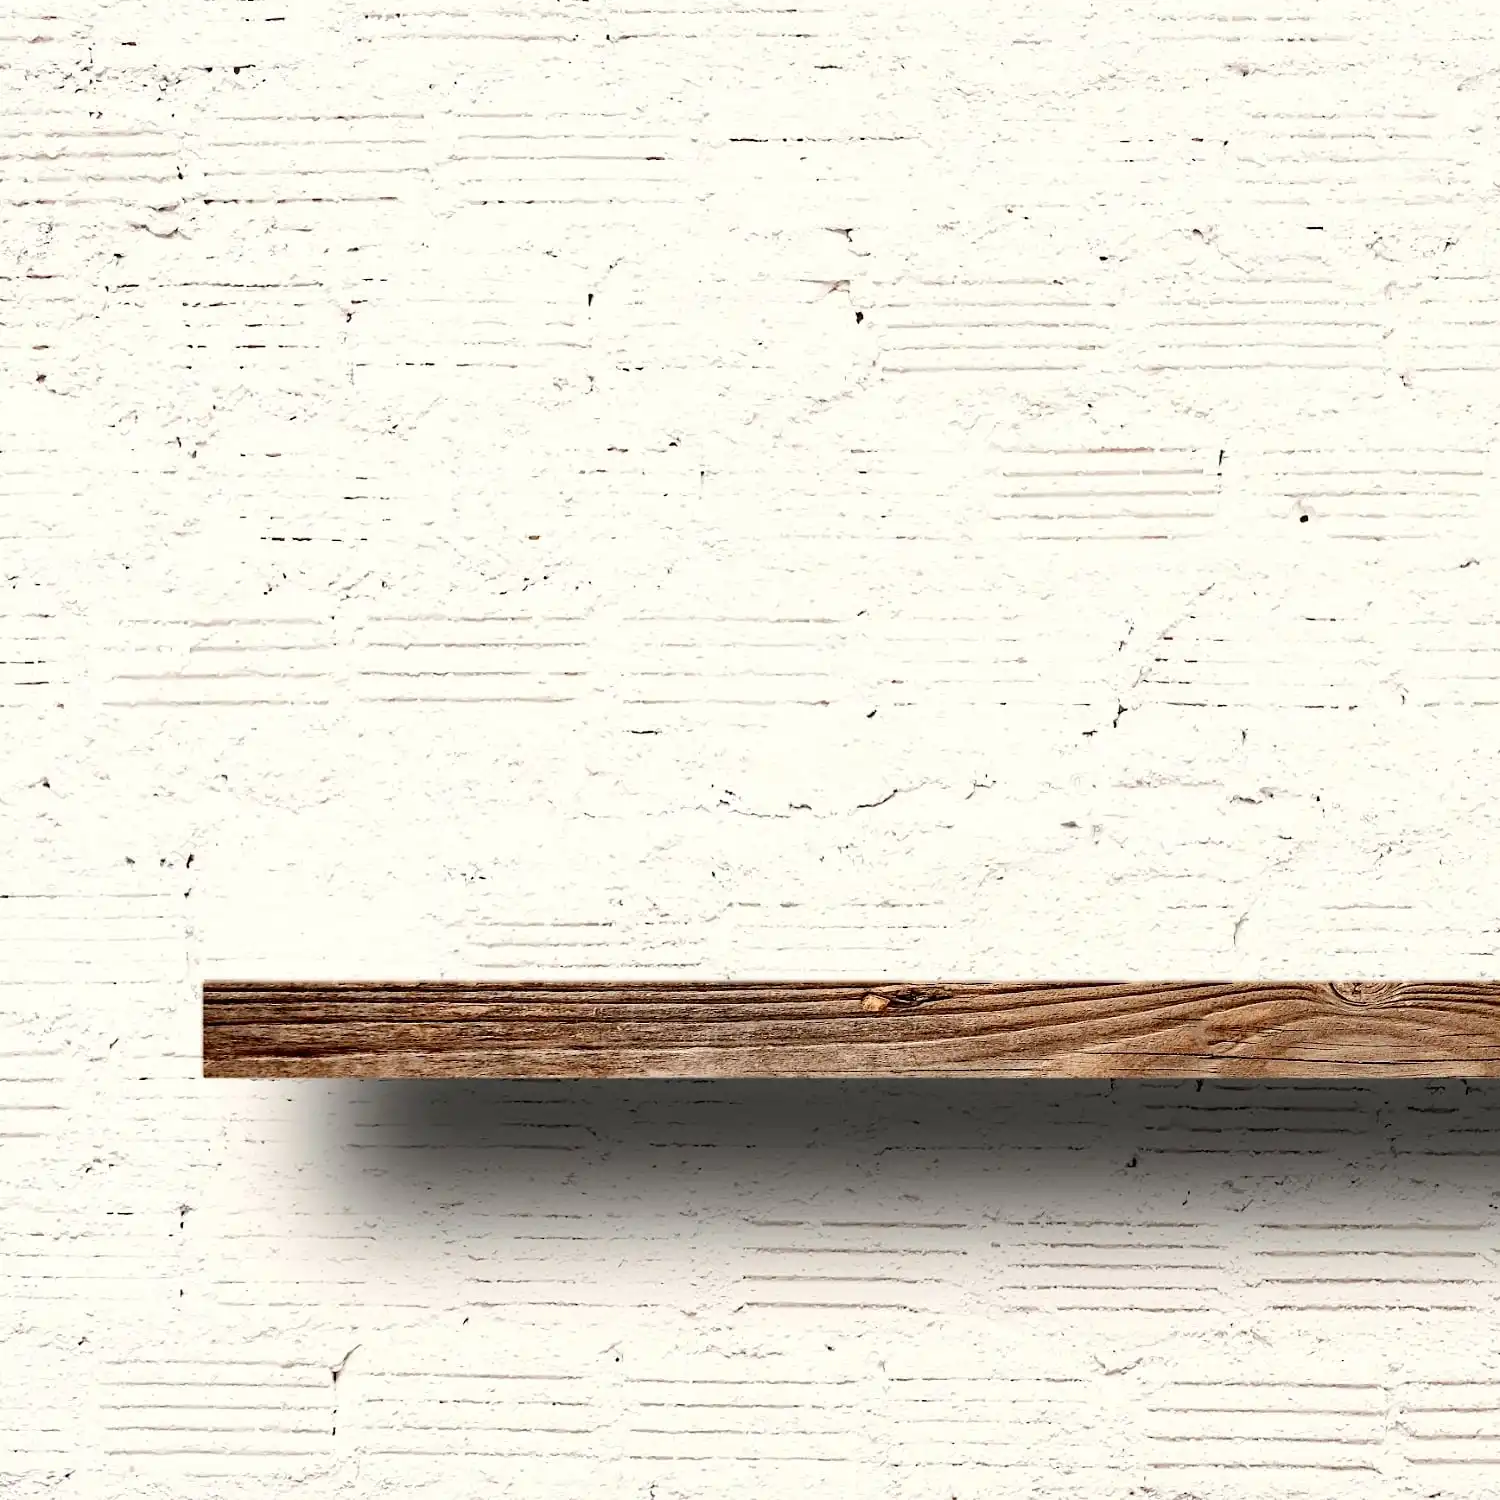 Une seule étagère en bois est montée sur un mur de briques blanches légèrement texturées, rappelant une étagère en bois ancienne. Les ombres tombent de l'étagère sur le mur en dessous.